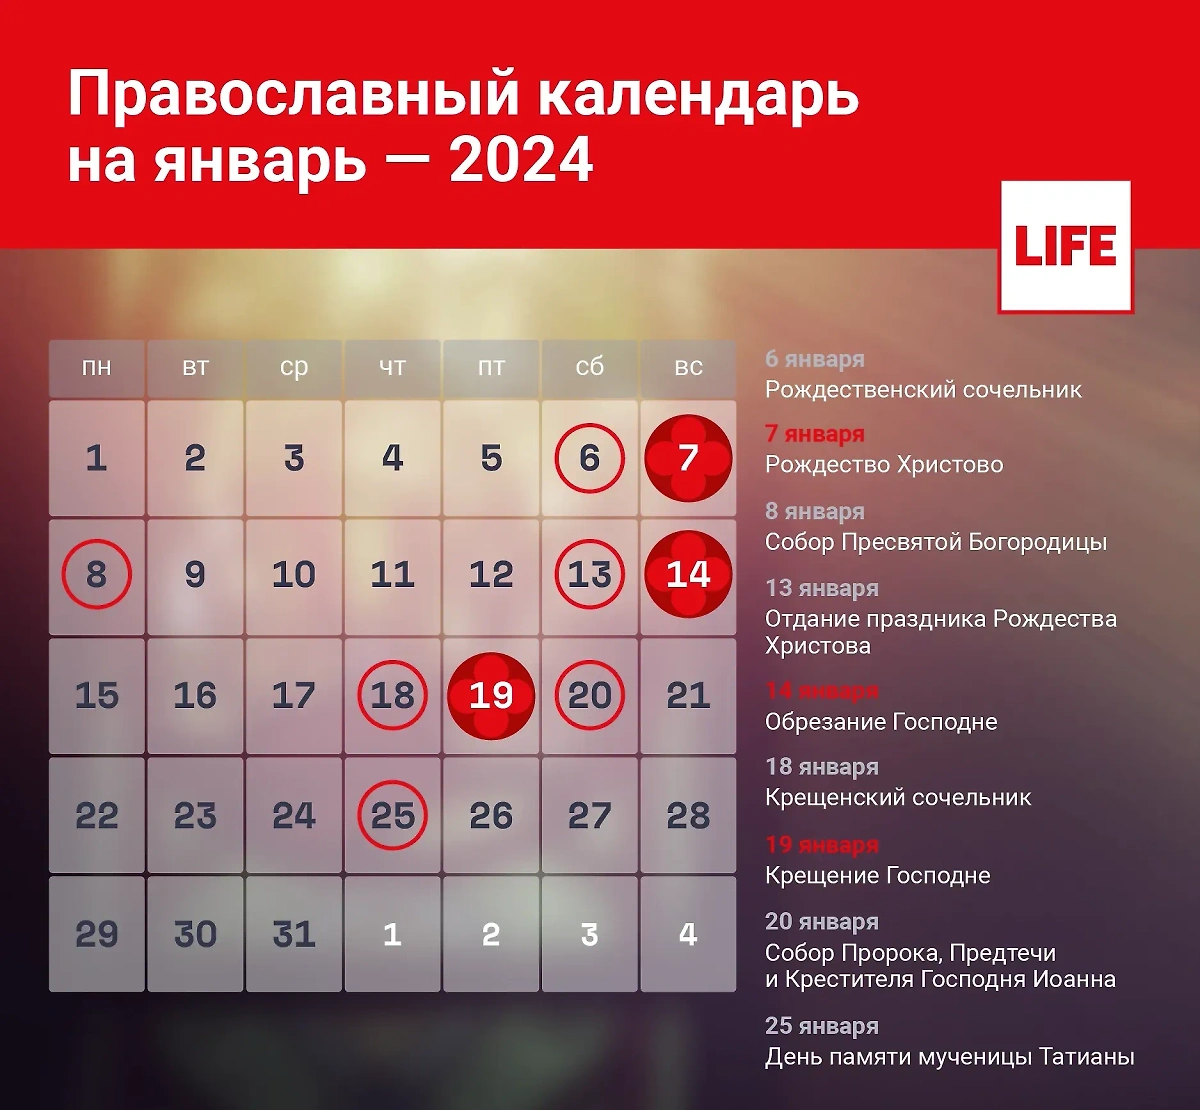 Православный календарь на январь 2024 года. Инфографика © LIFE